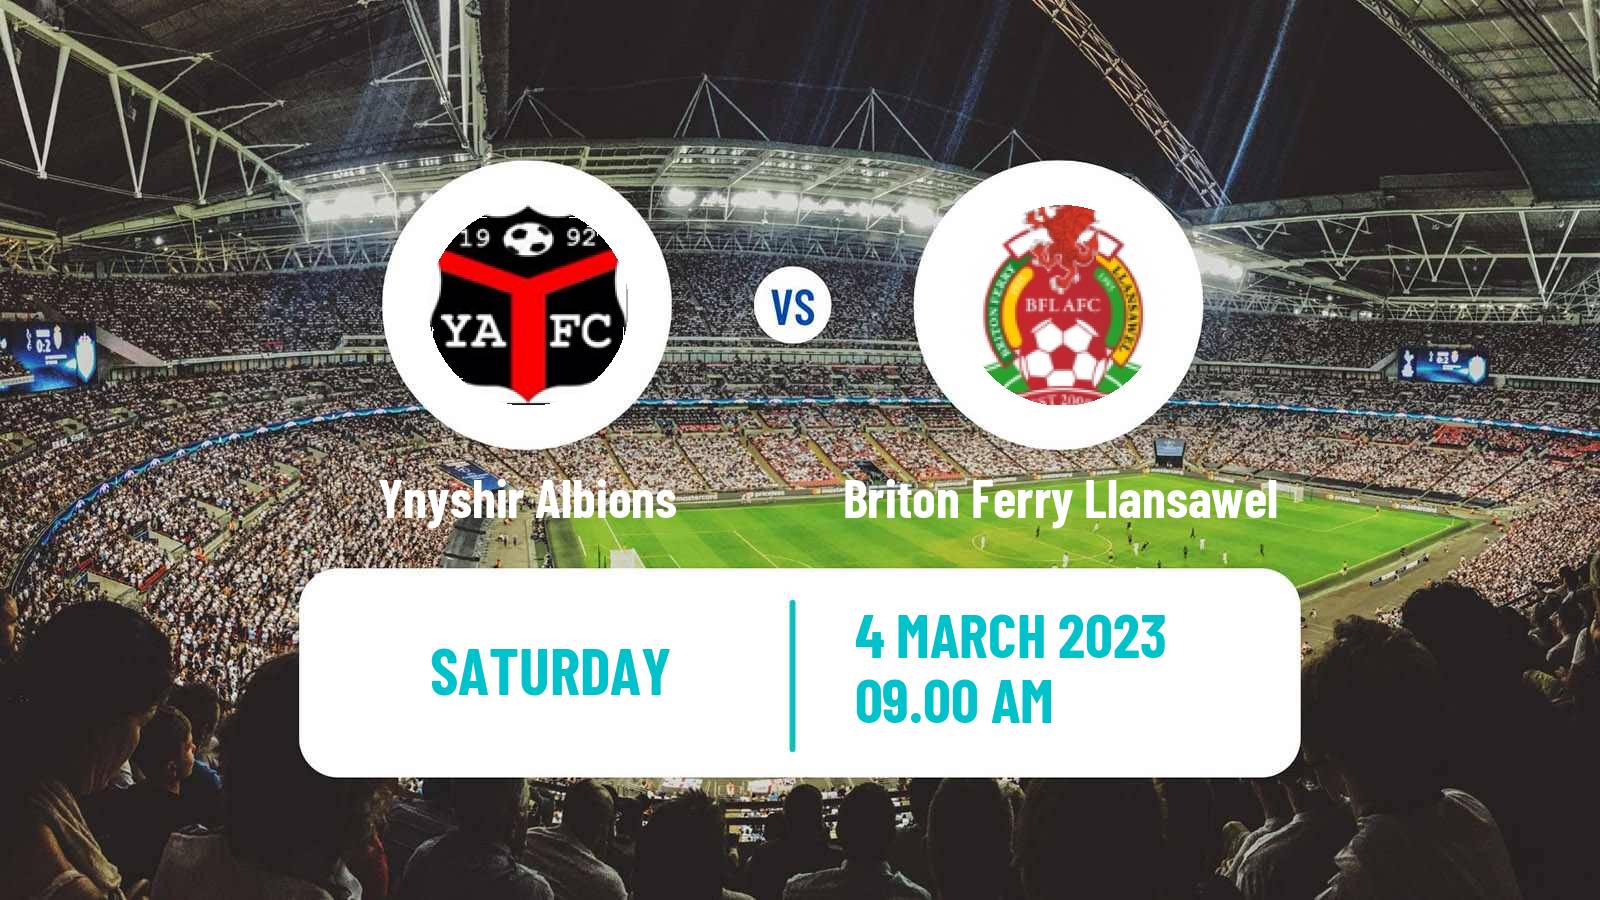 Soccer Welsh Cymru South Ynyshir Albions - Briton Ferry Llansawel